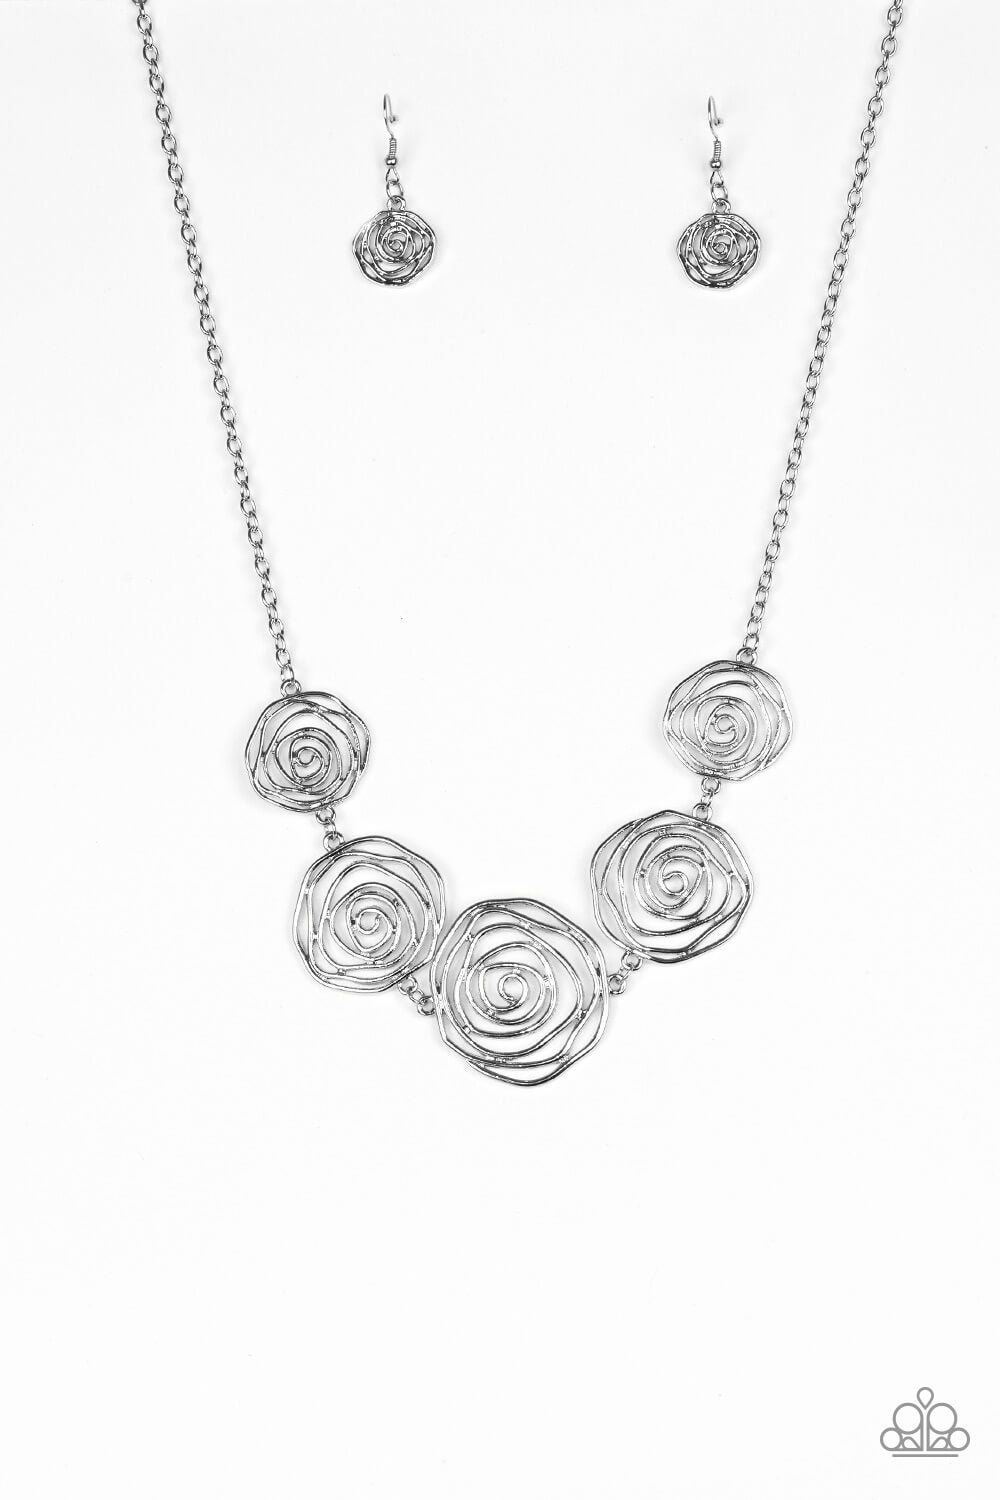 Rosy Rosette - Silver Rosebud Frame Collar Necklace Set & Bracelet Combo - Princess Glam Shop